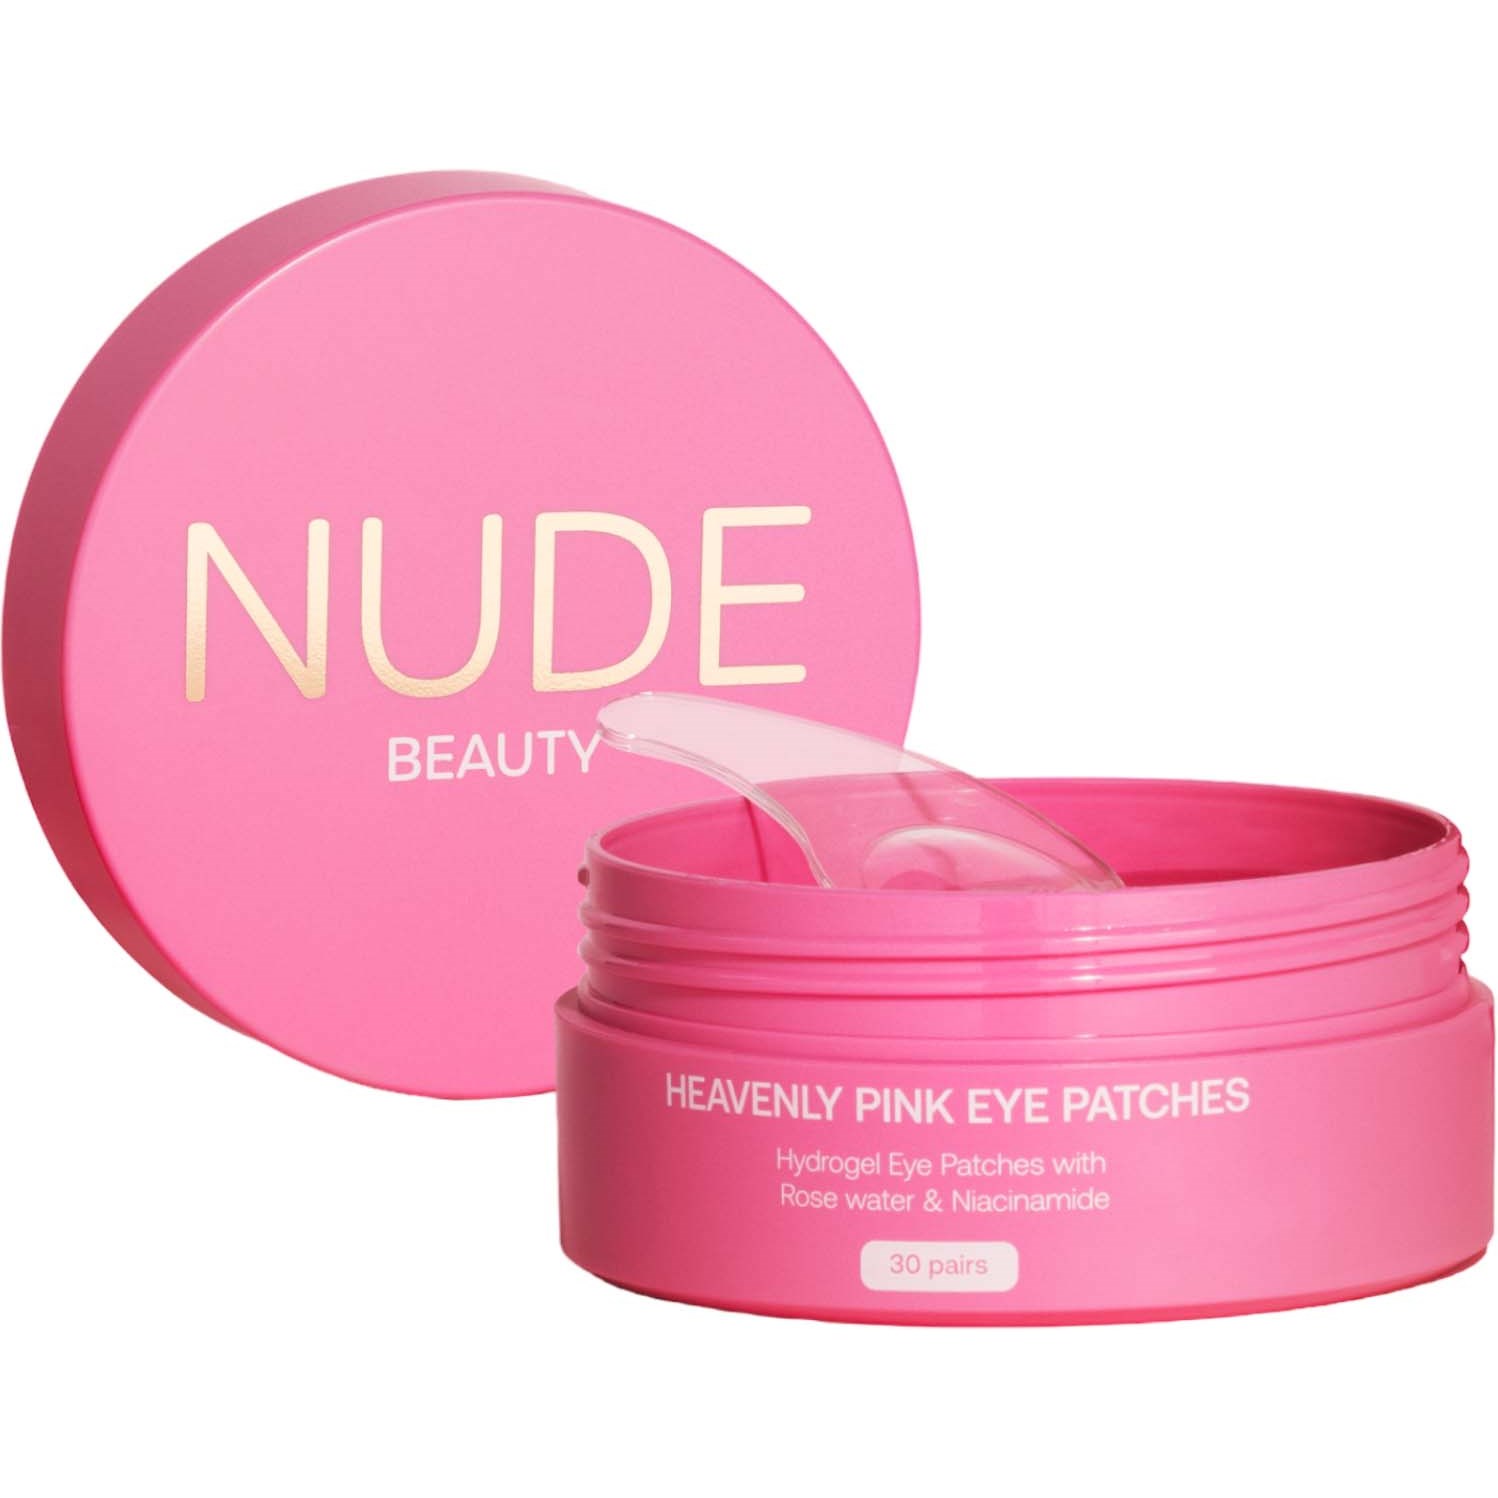 Bilde av Nude Beauty Heavenly Pink Eye Patches 30 Par